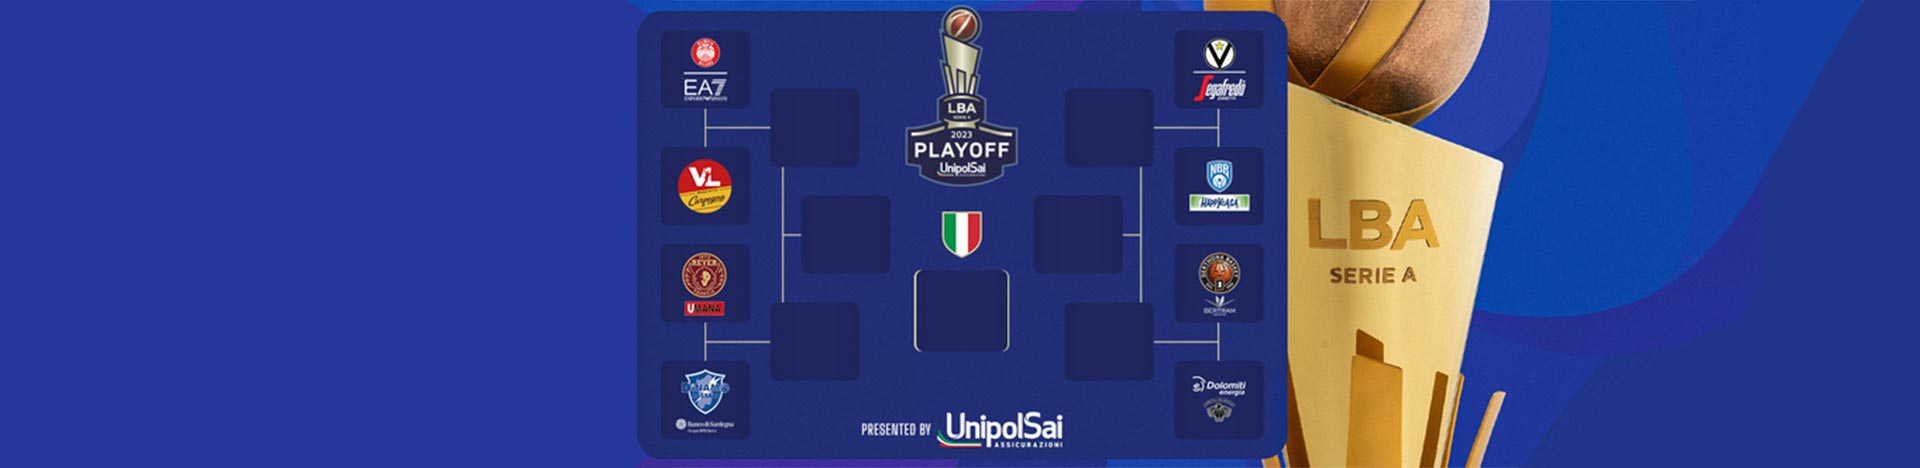 Serie A UnipolSai 2022/23 Quarti playoff Gara4: <br>Tortona batte Trento ed è l’ultima semifinalista. Il tabellone e i risultati dopo i match giocati